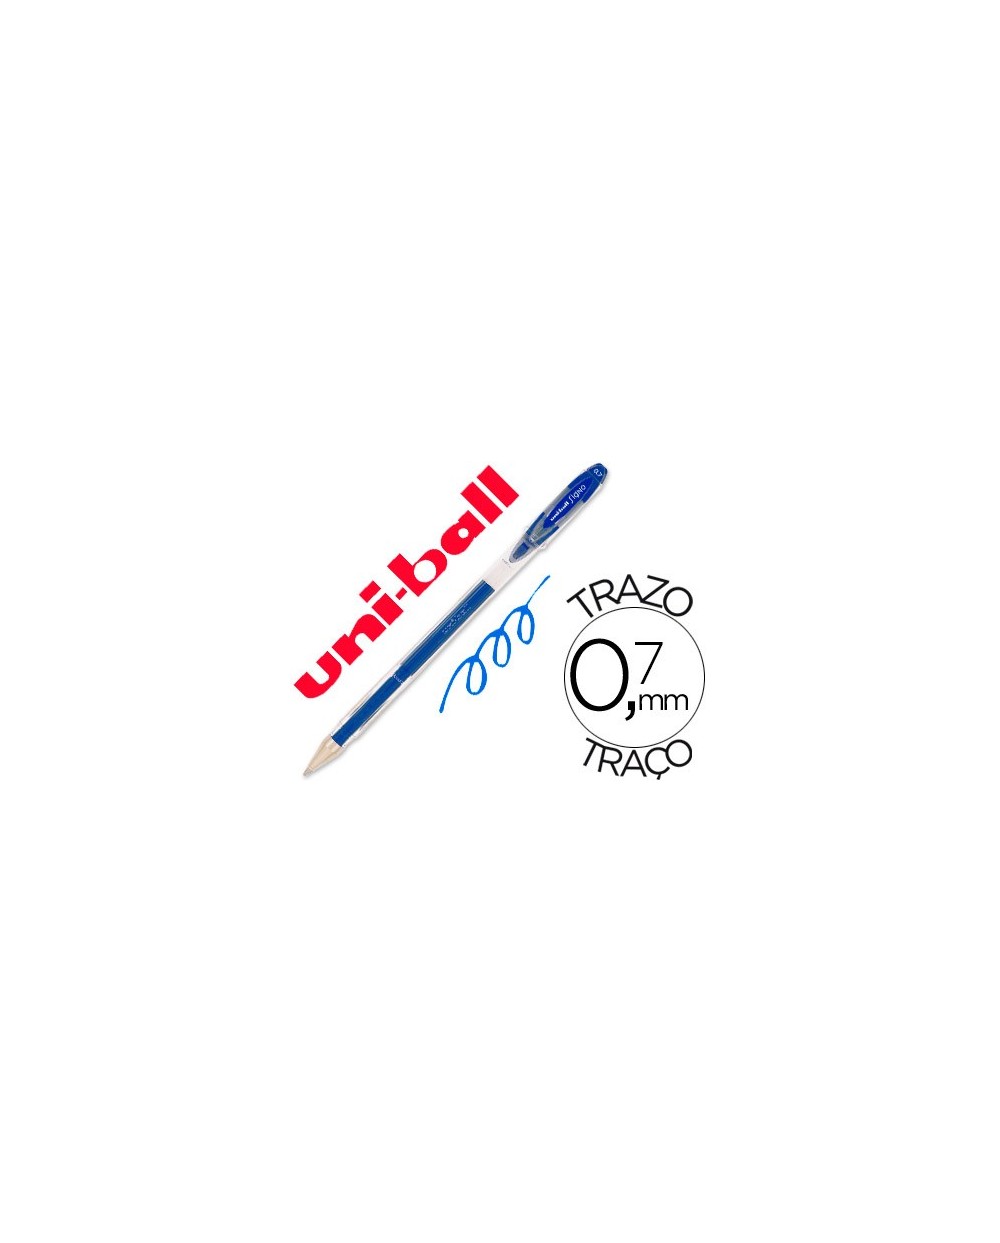 Boligrafo uni ball roller um 120 signo 07 mm tinta gel color azul